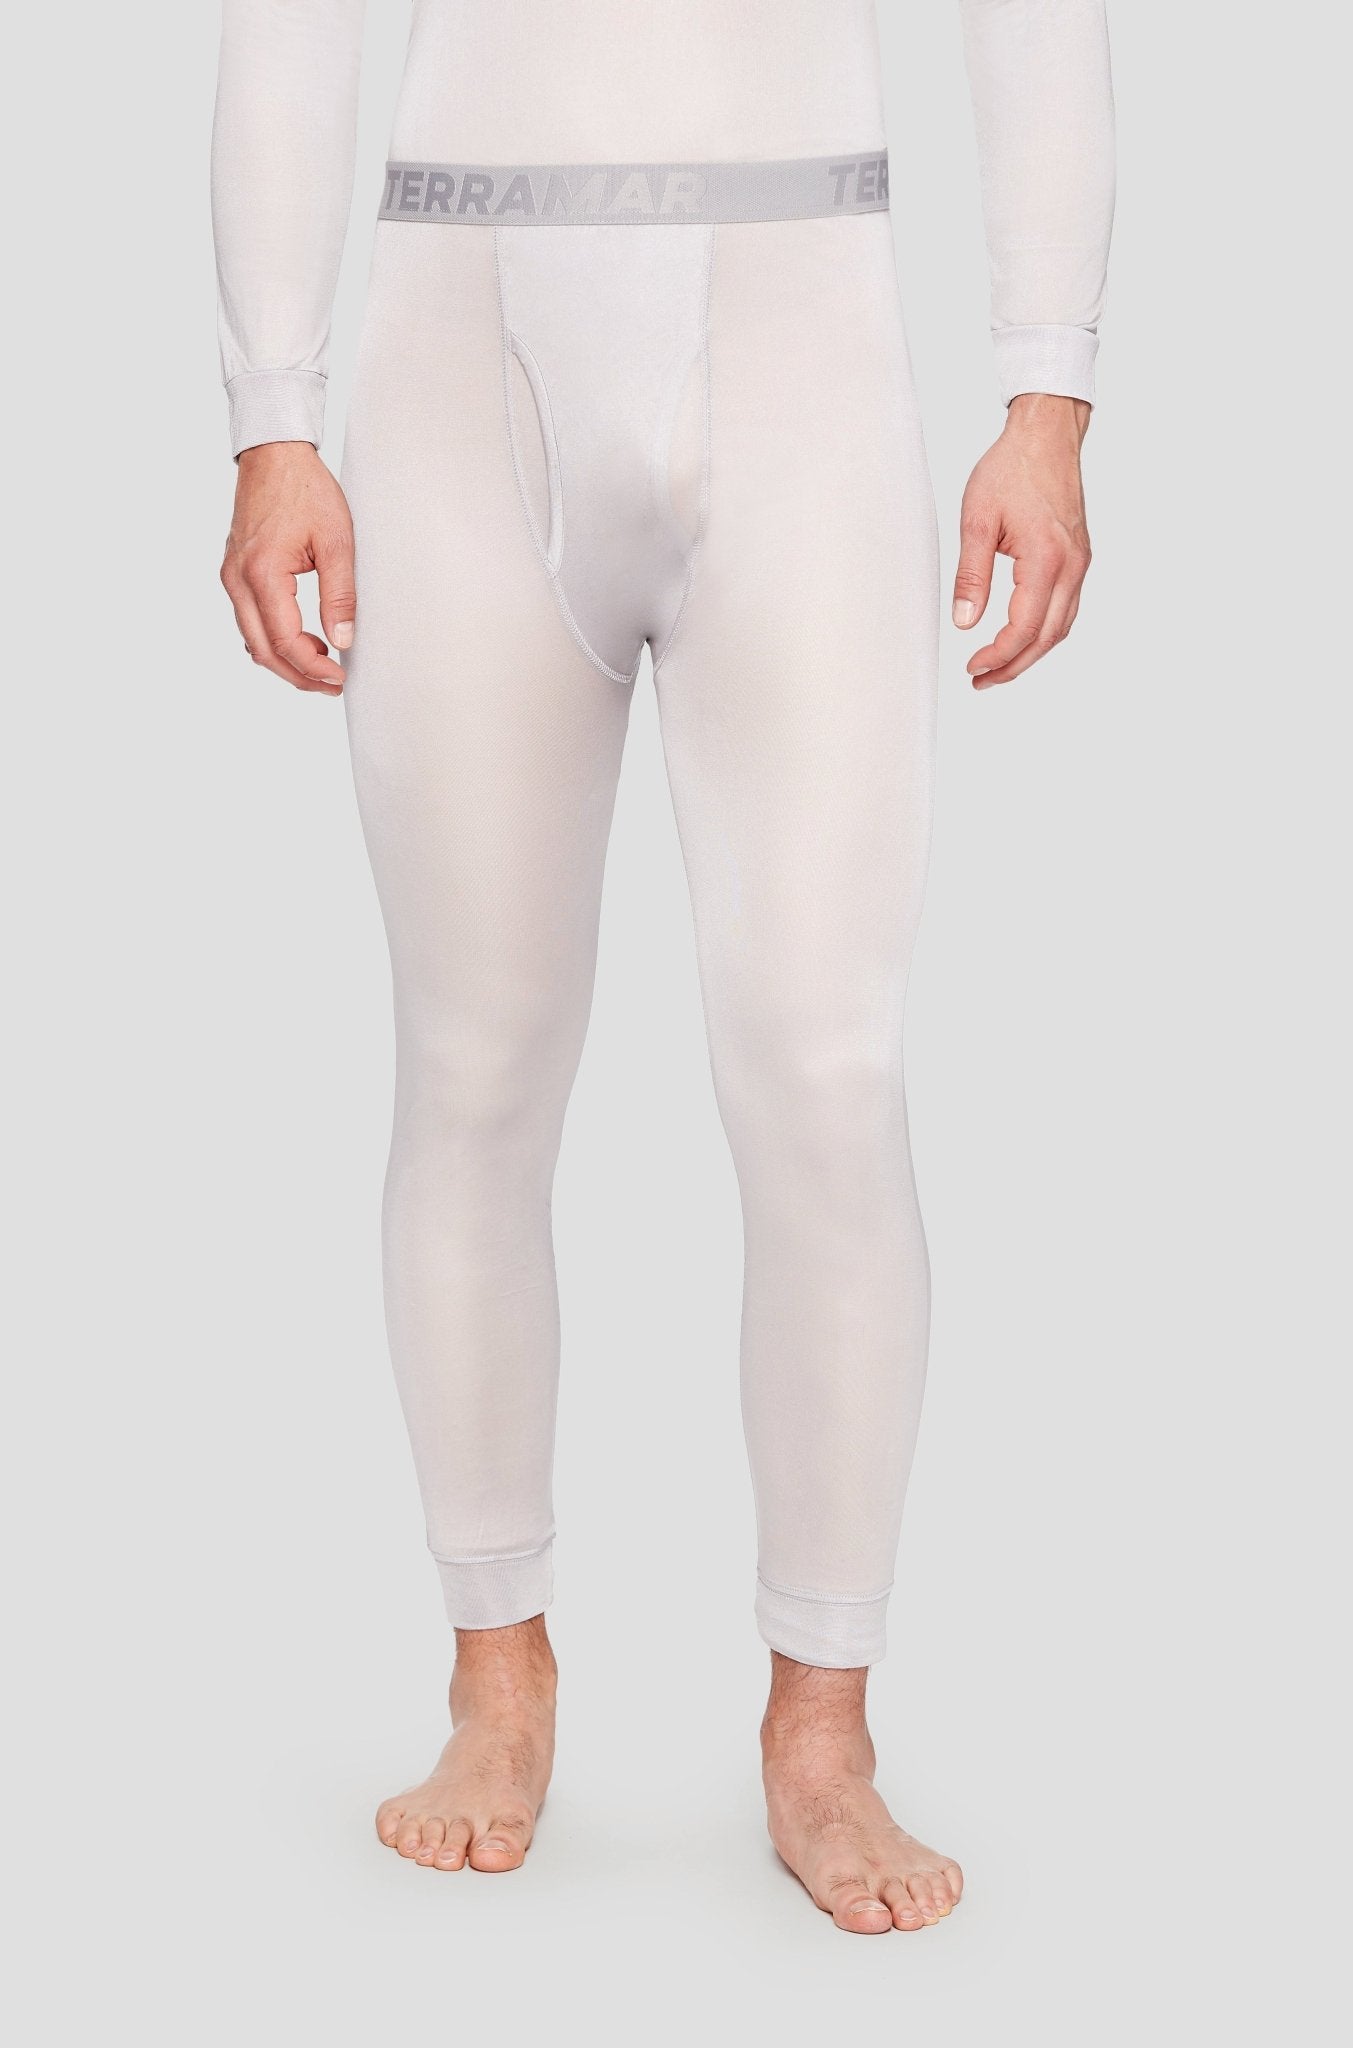 PolarTec Silk Weight Long Underwear Mens Shirt & Pants